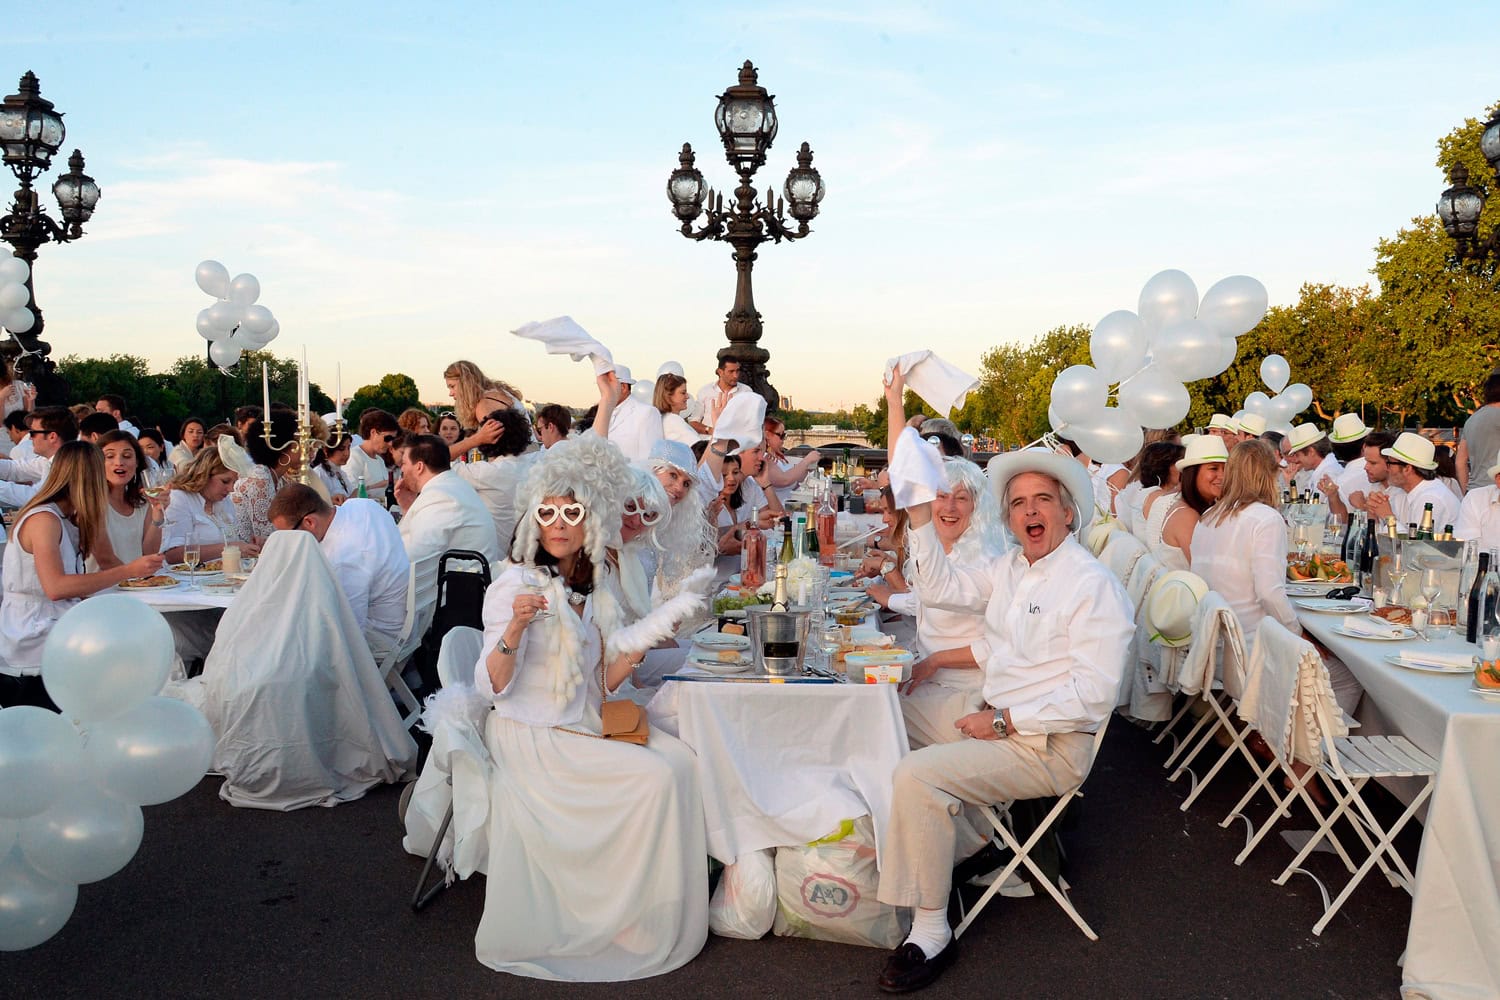 París celebra "Le Dîner en Blanc"